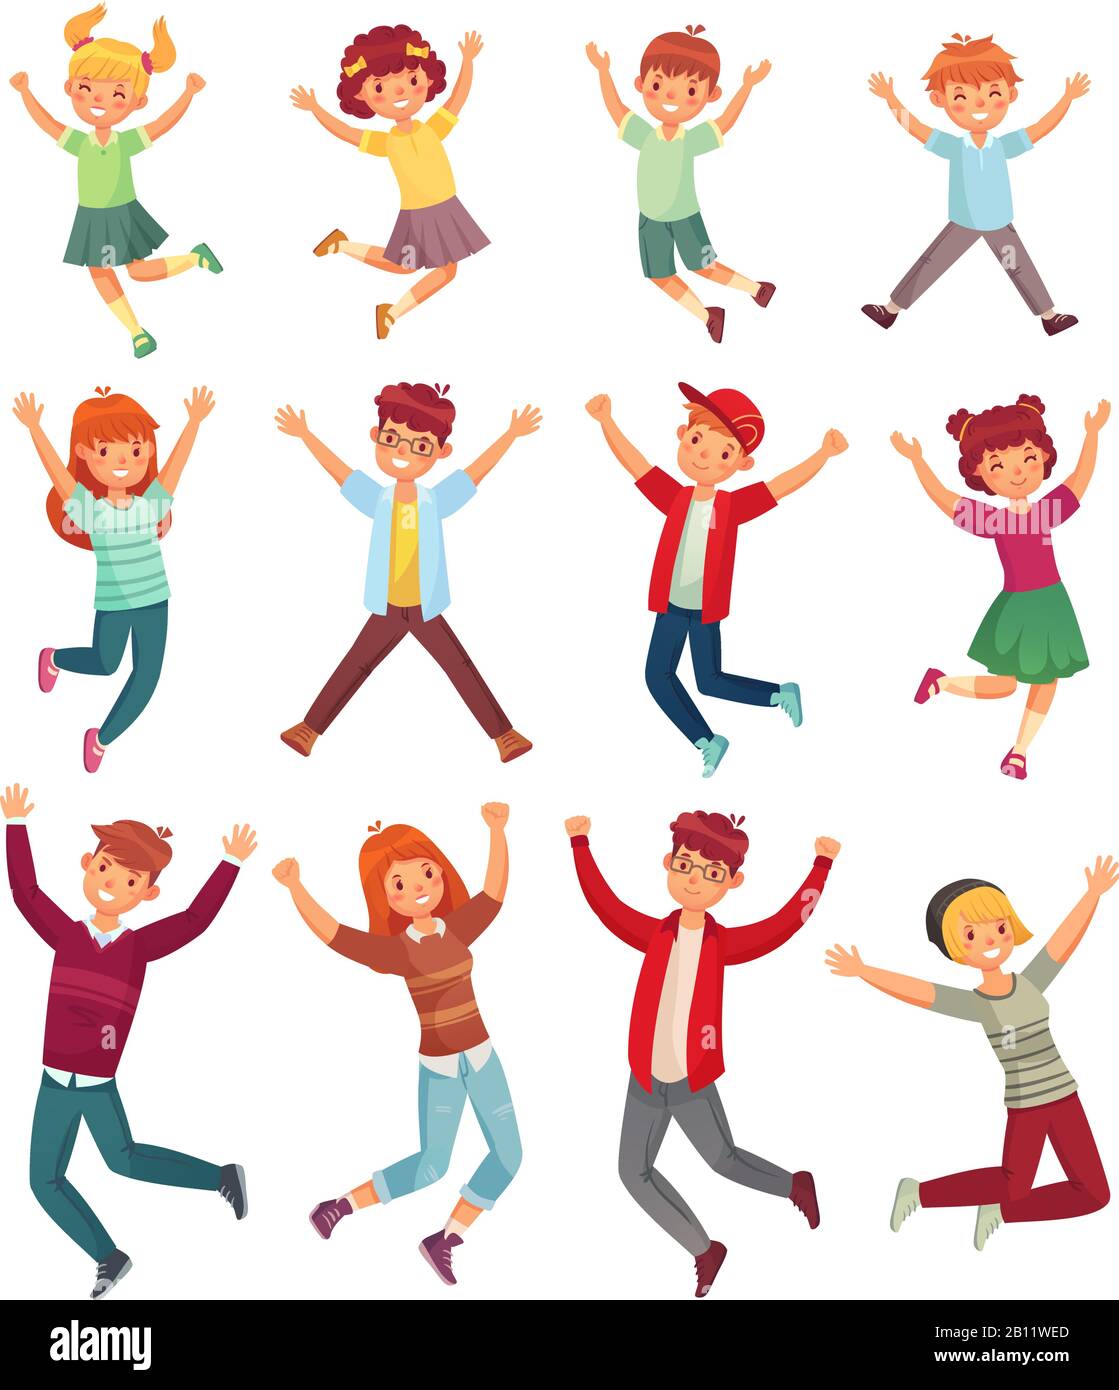 Springende Kinder. Aufgeregte Kinder springen, glückliche gesprungene Teenager und lächelnde Kinder springen Cartoon Vektor Illustration Set Stock Vektor